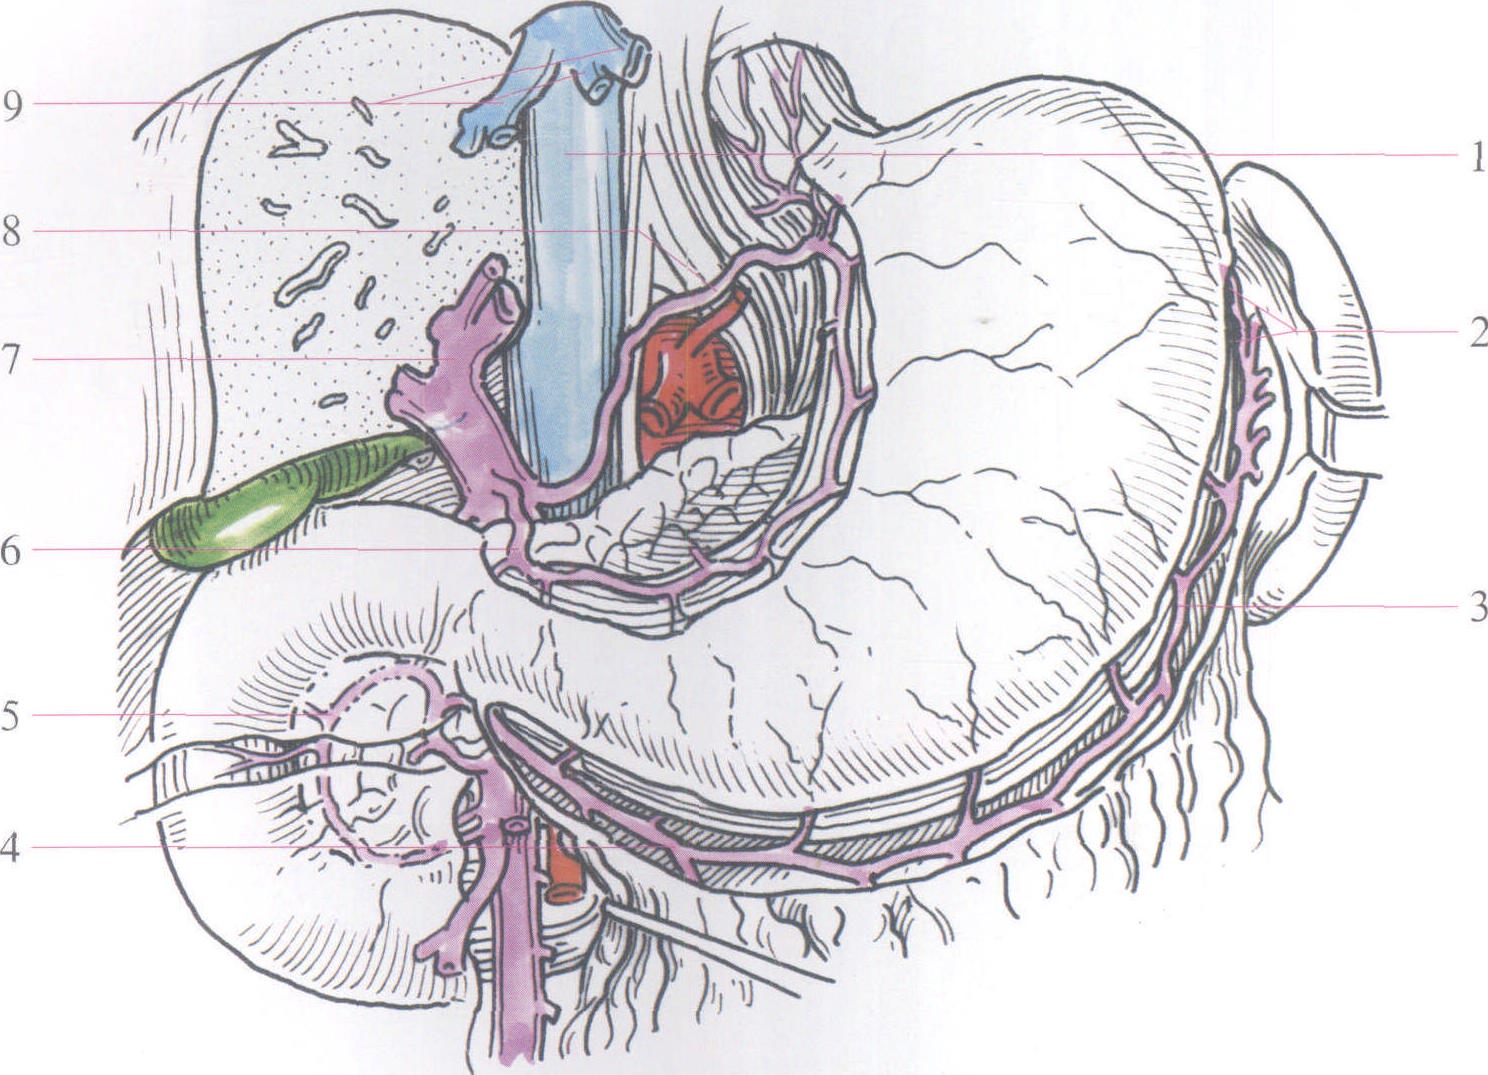 胃左静脉解剖图图片